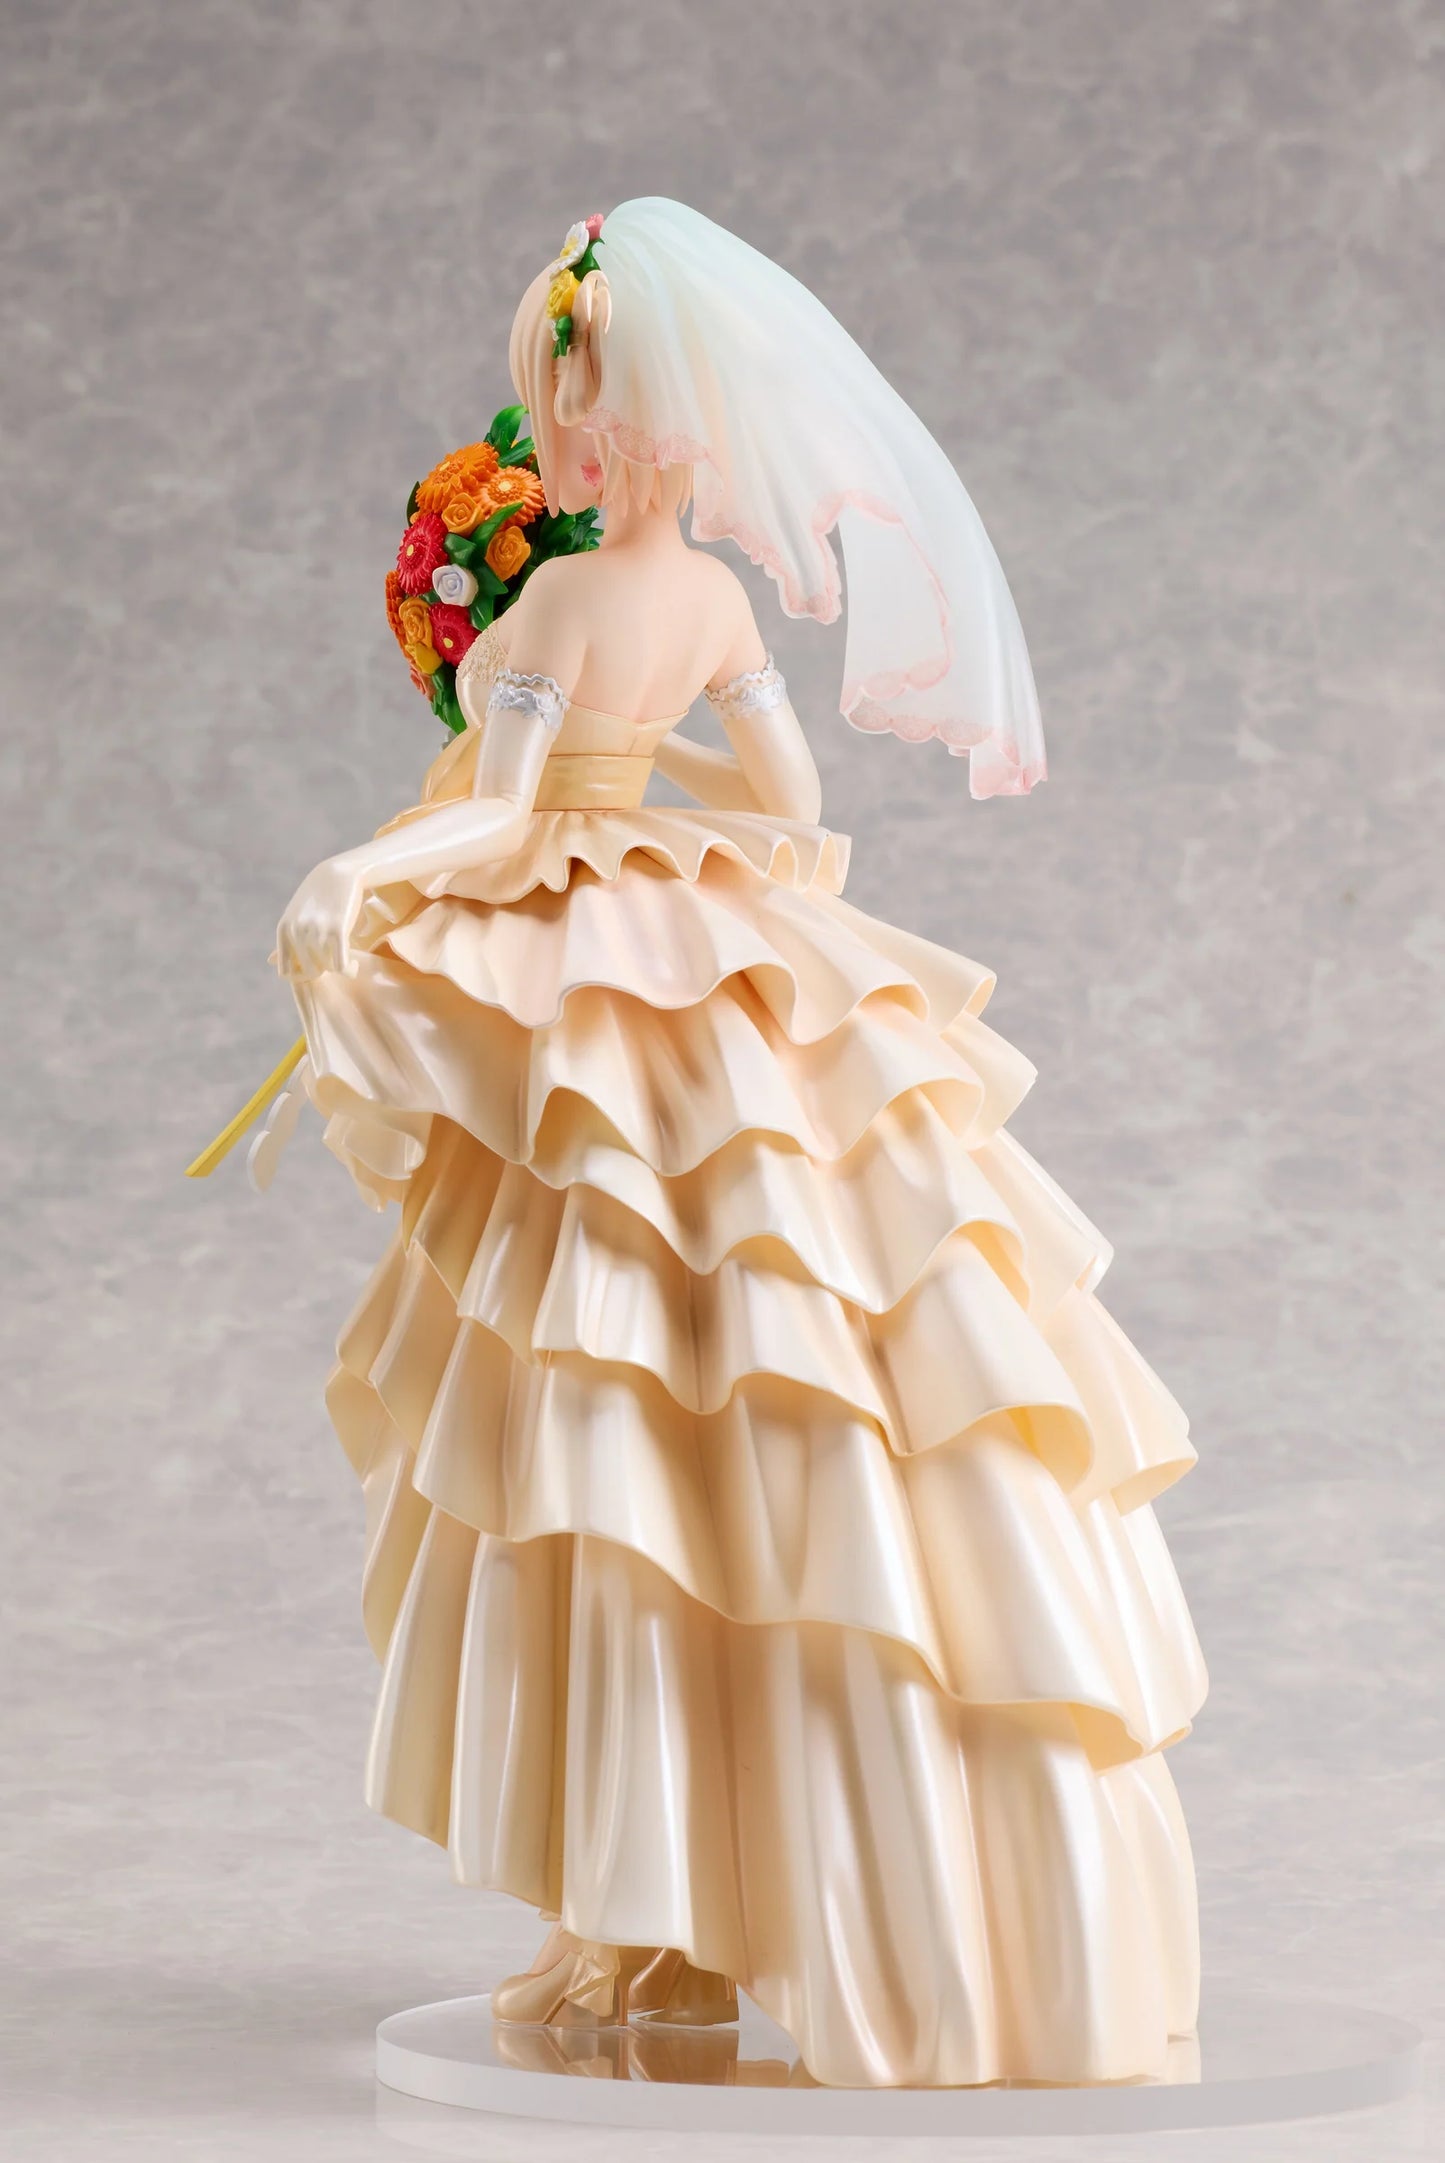 Aniplex Scale Figure: Lycoris Recoil - Chisato Nishikigi Vestido De Novia Escala 1/7 Preventa